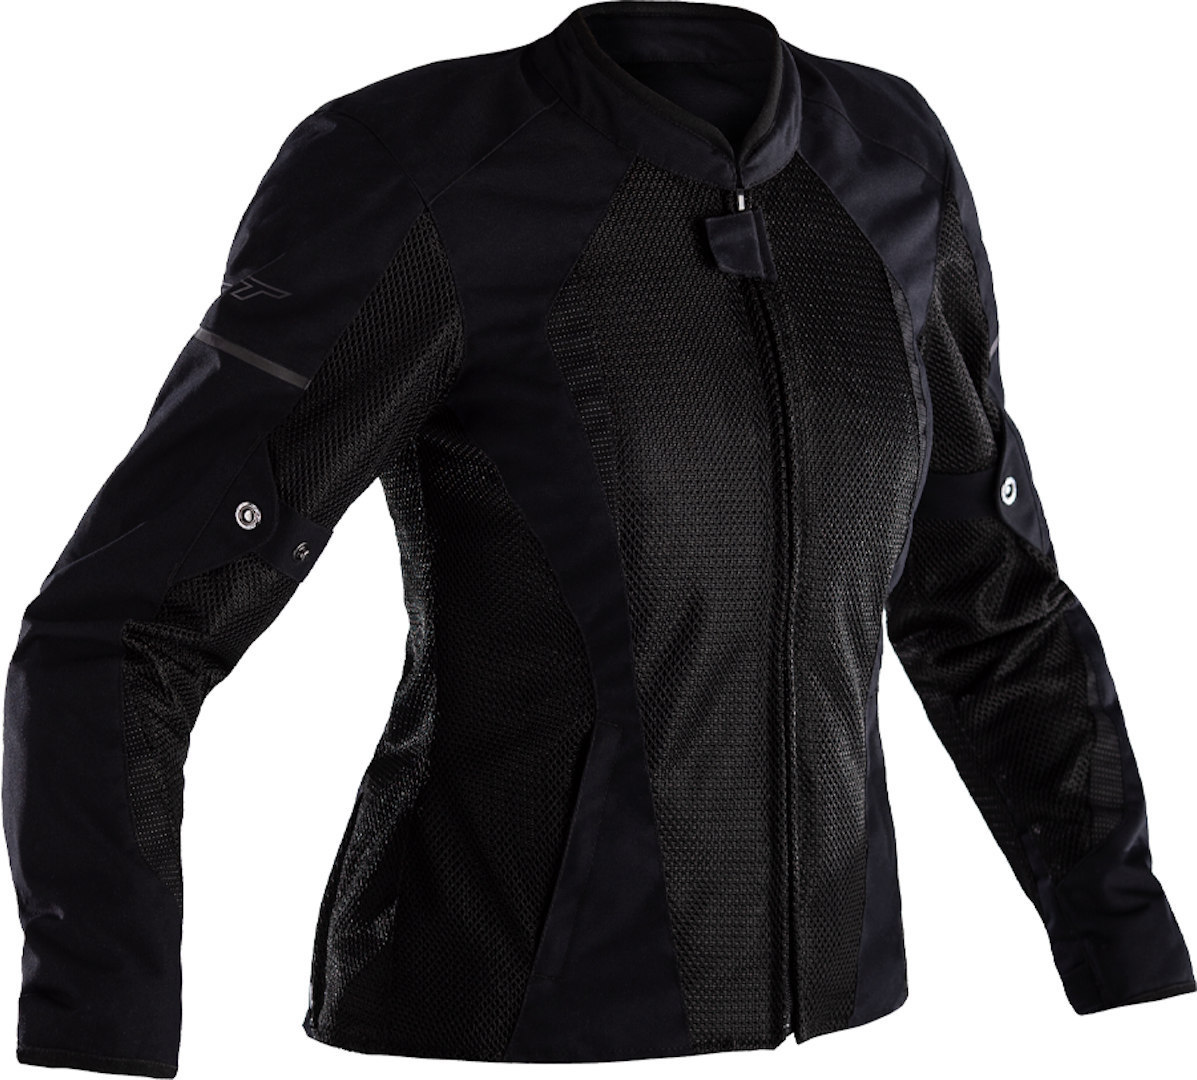 RST F-Lite Damen Motorrad Textiljacke, schwarz, Größe 36, schwarz, Größe 36